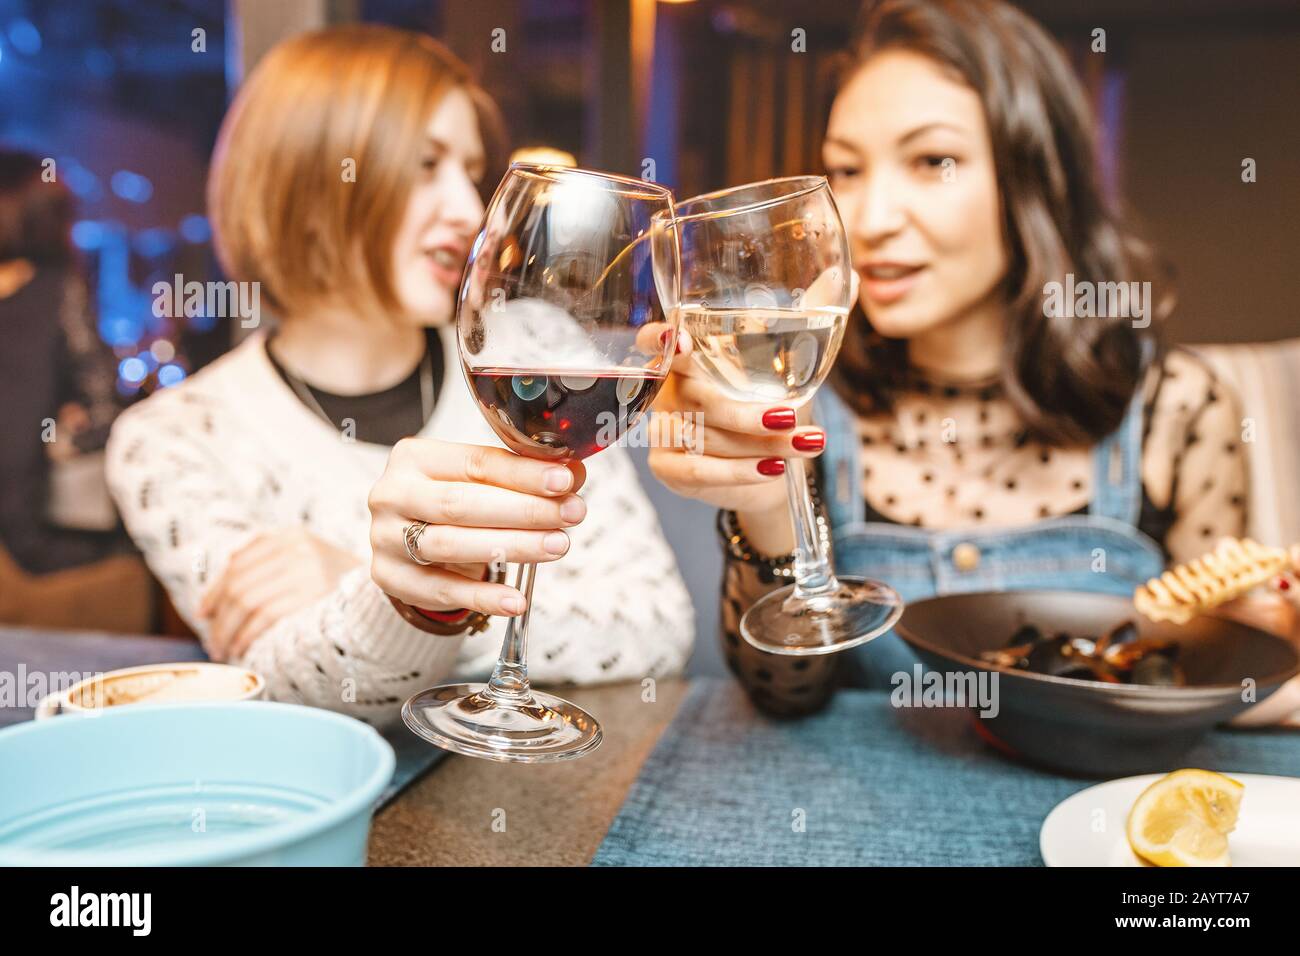 Deux filles amis s'amusent et bavarder tout en buvant un verre de vin dans un restaurant dans une discothèque. Le concept de détente et de frégate Banque D'Images